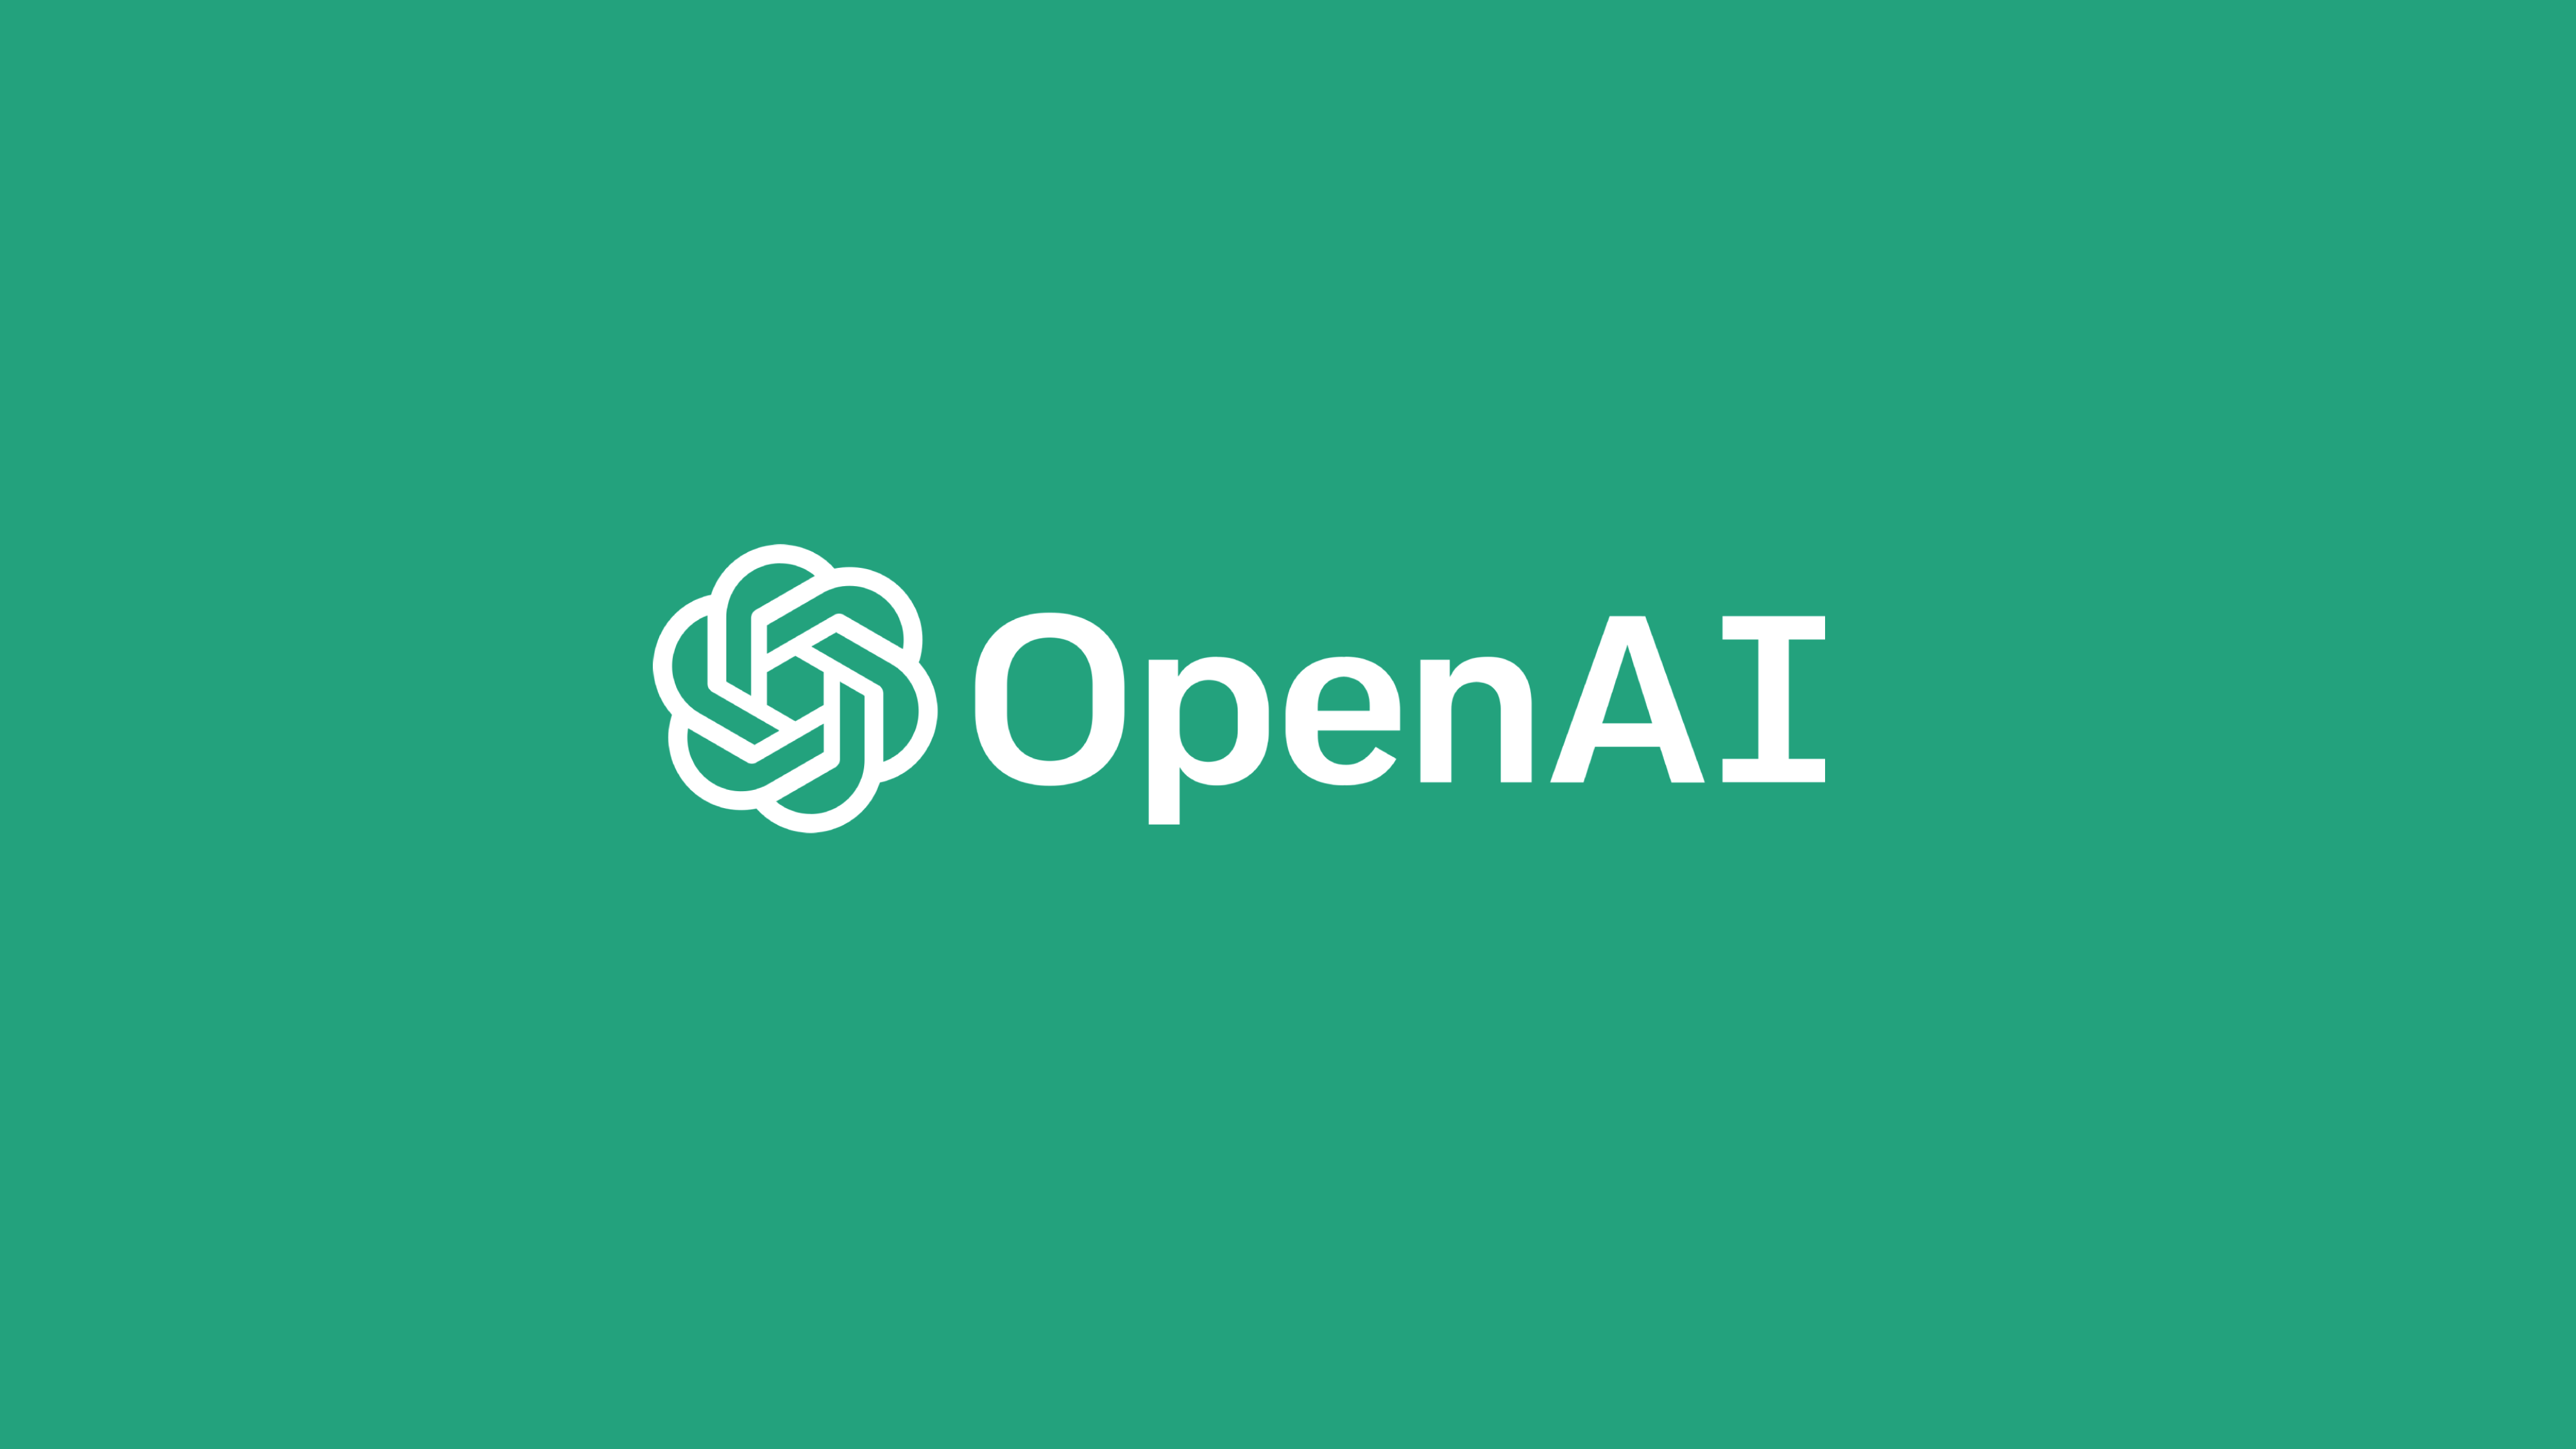 OpenAI PPUs: How OpenAI's unique equity compensation works